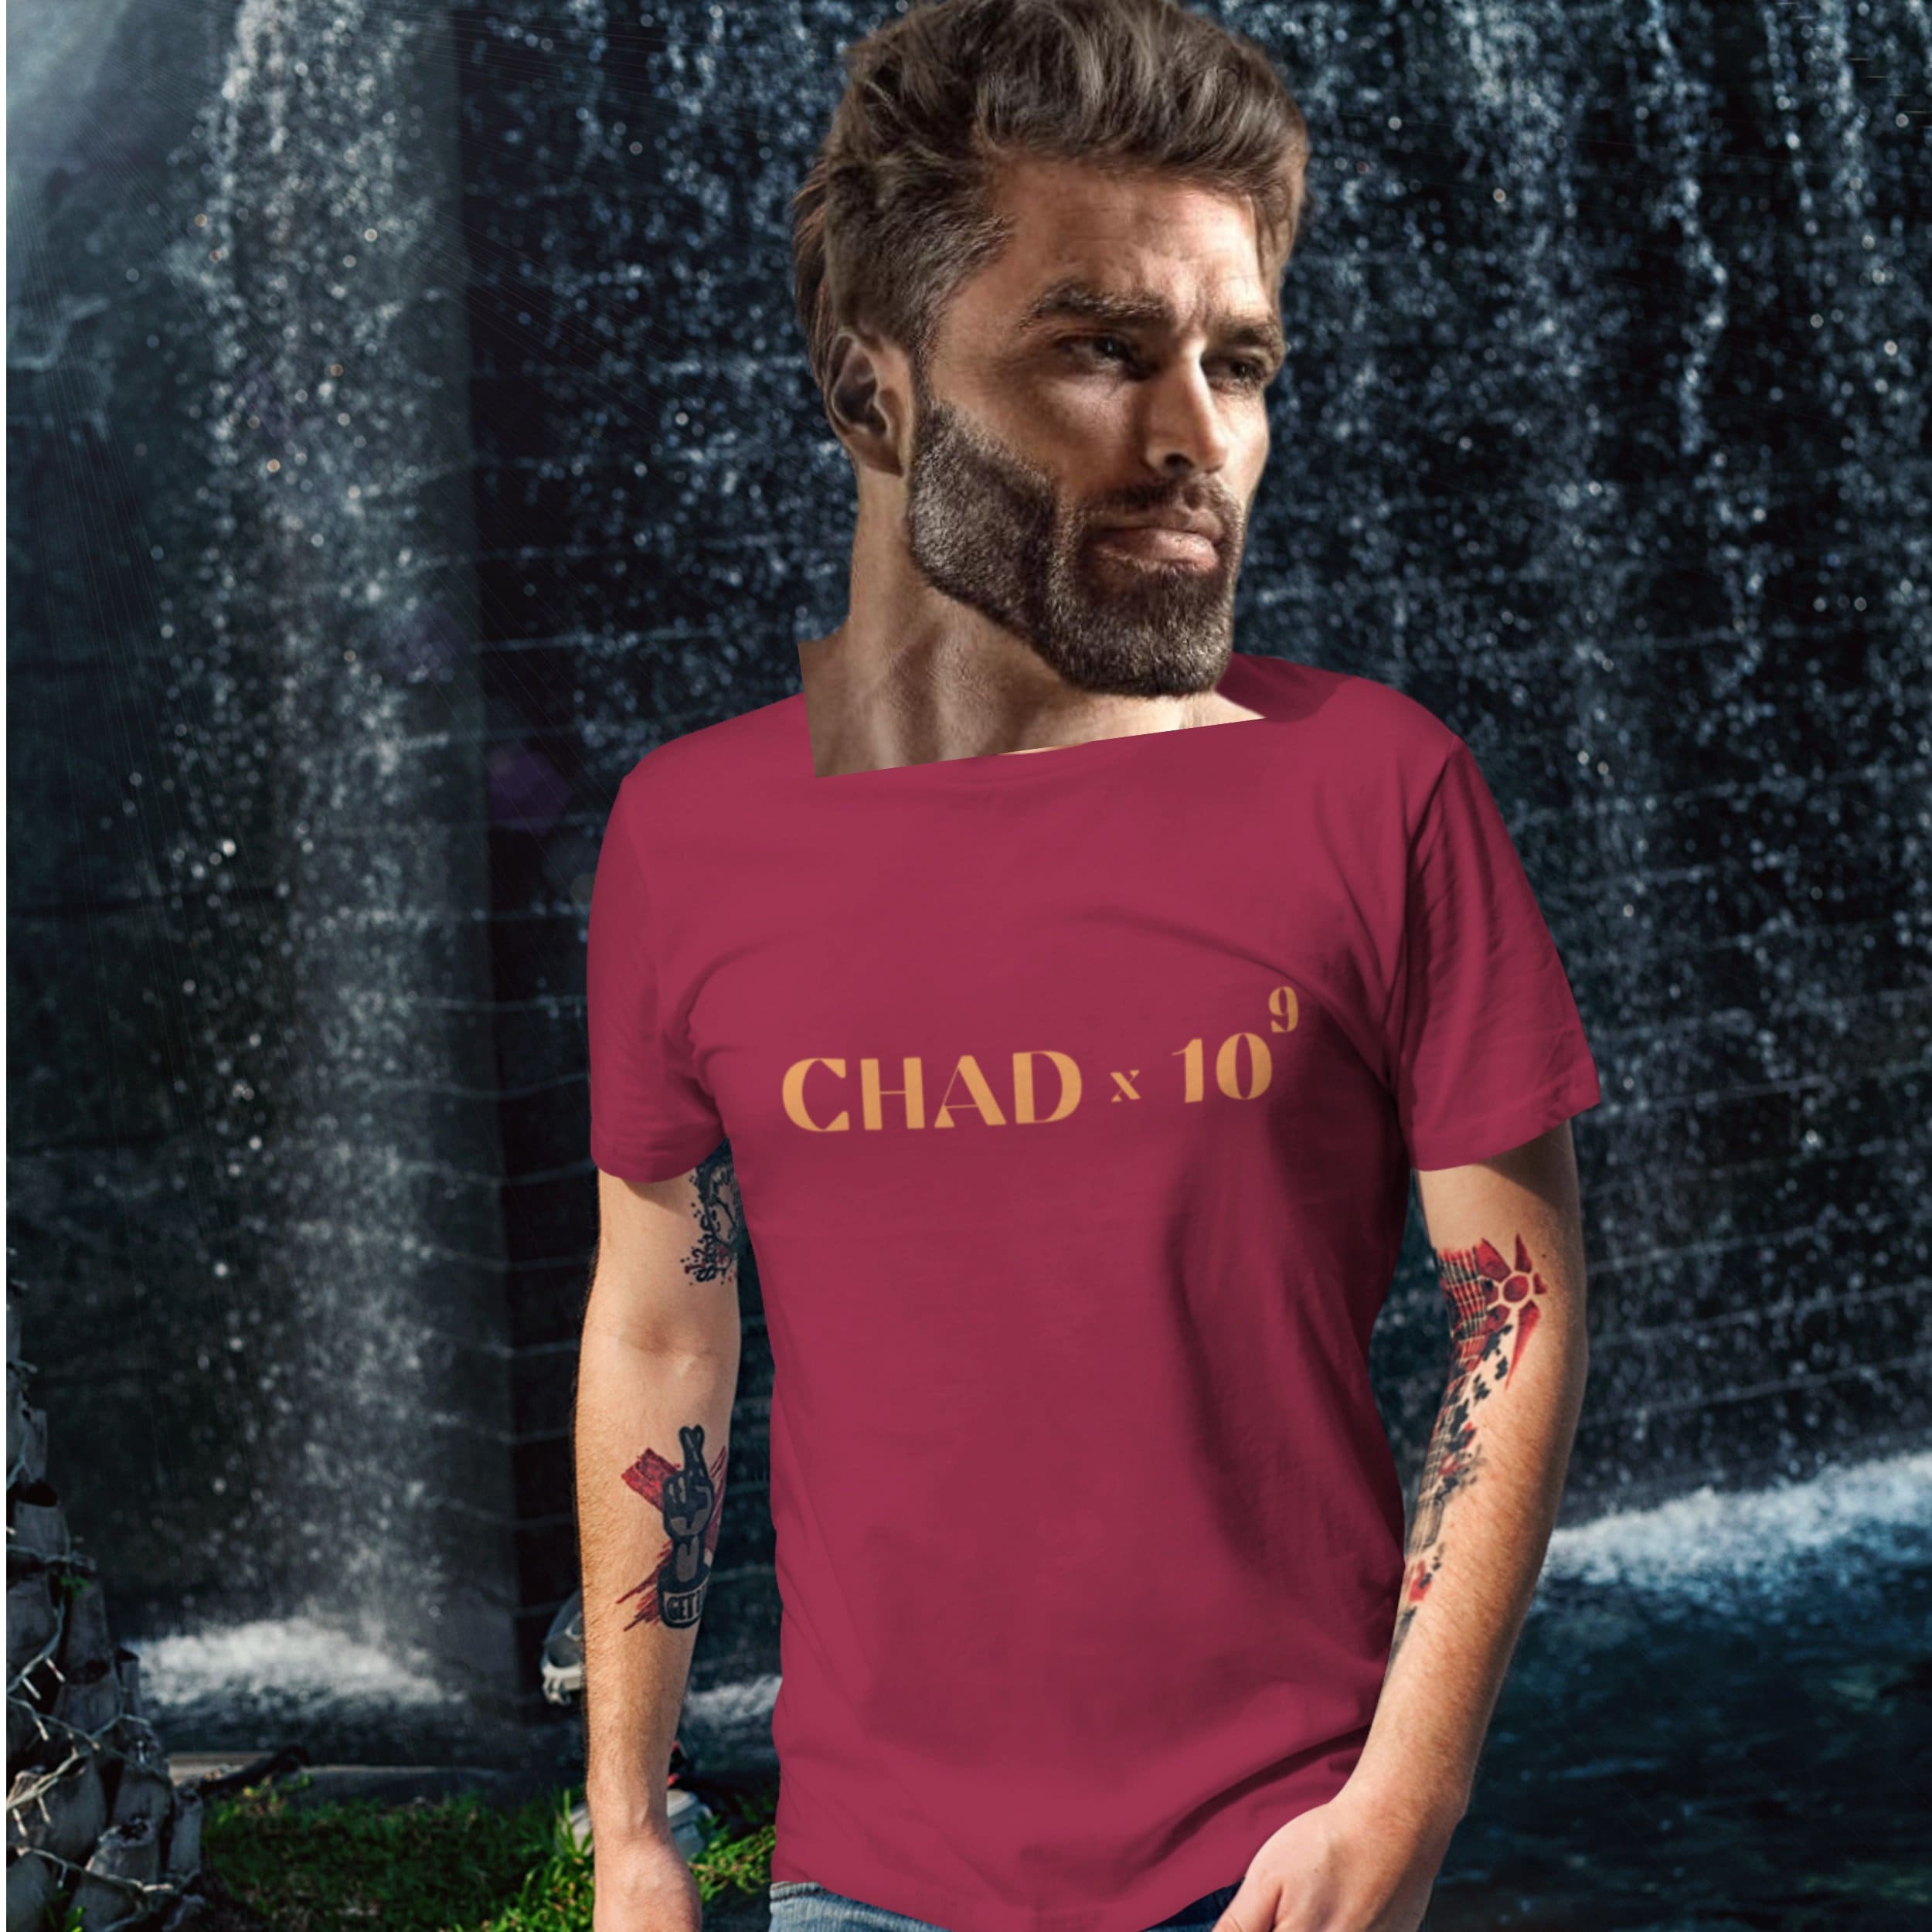 Giga Chad T-shirt Photographic Print for Sale by TshirtGigaChad